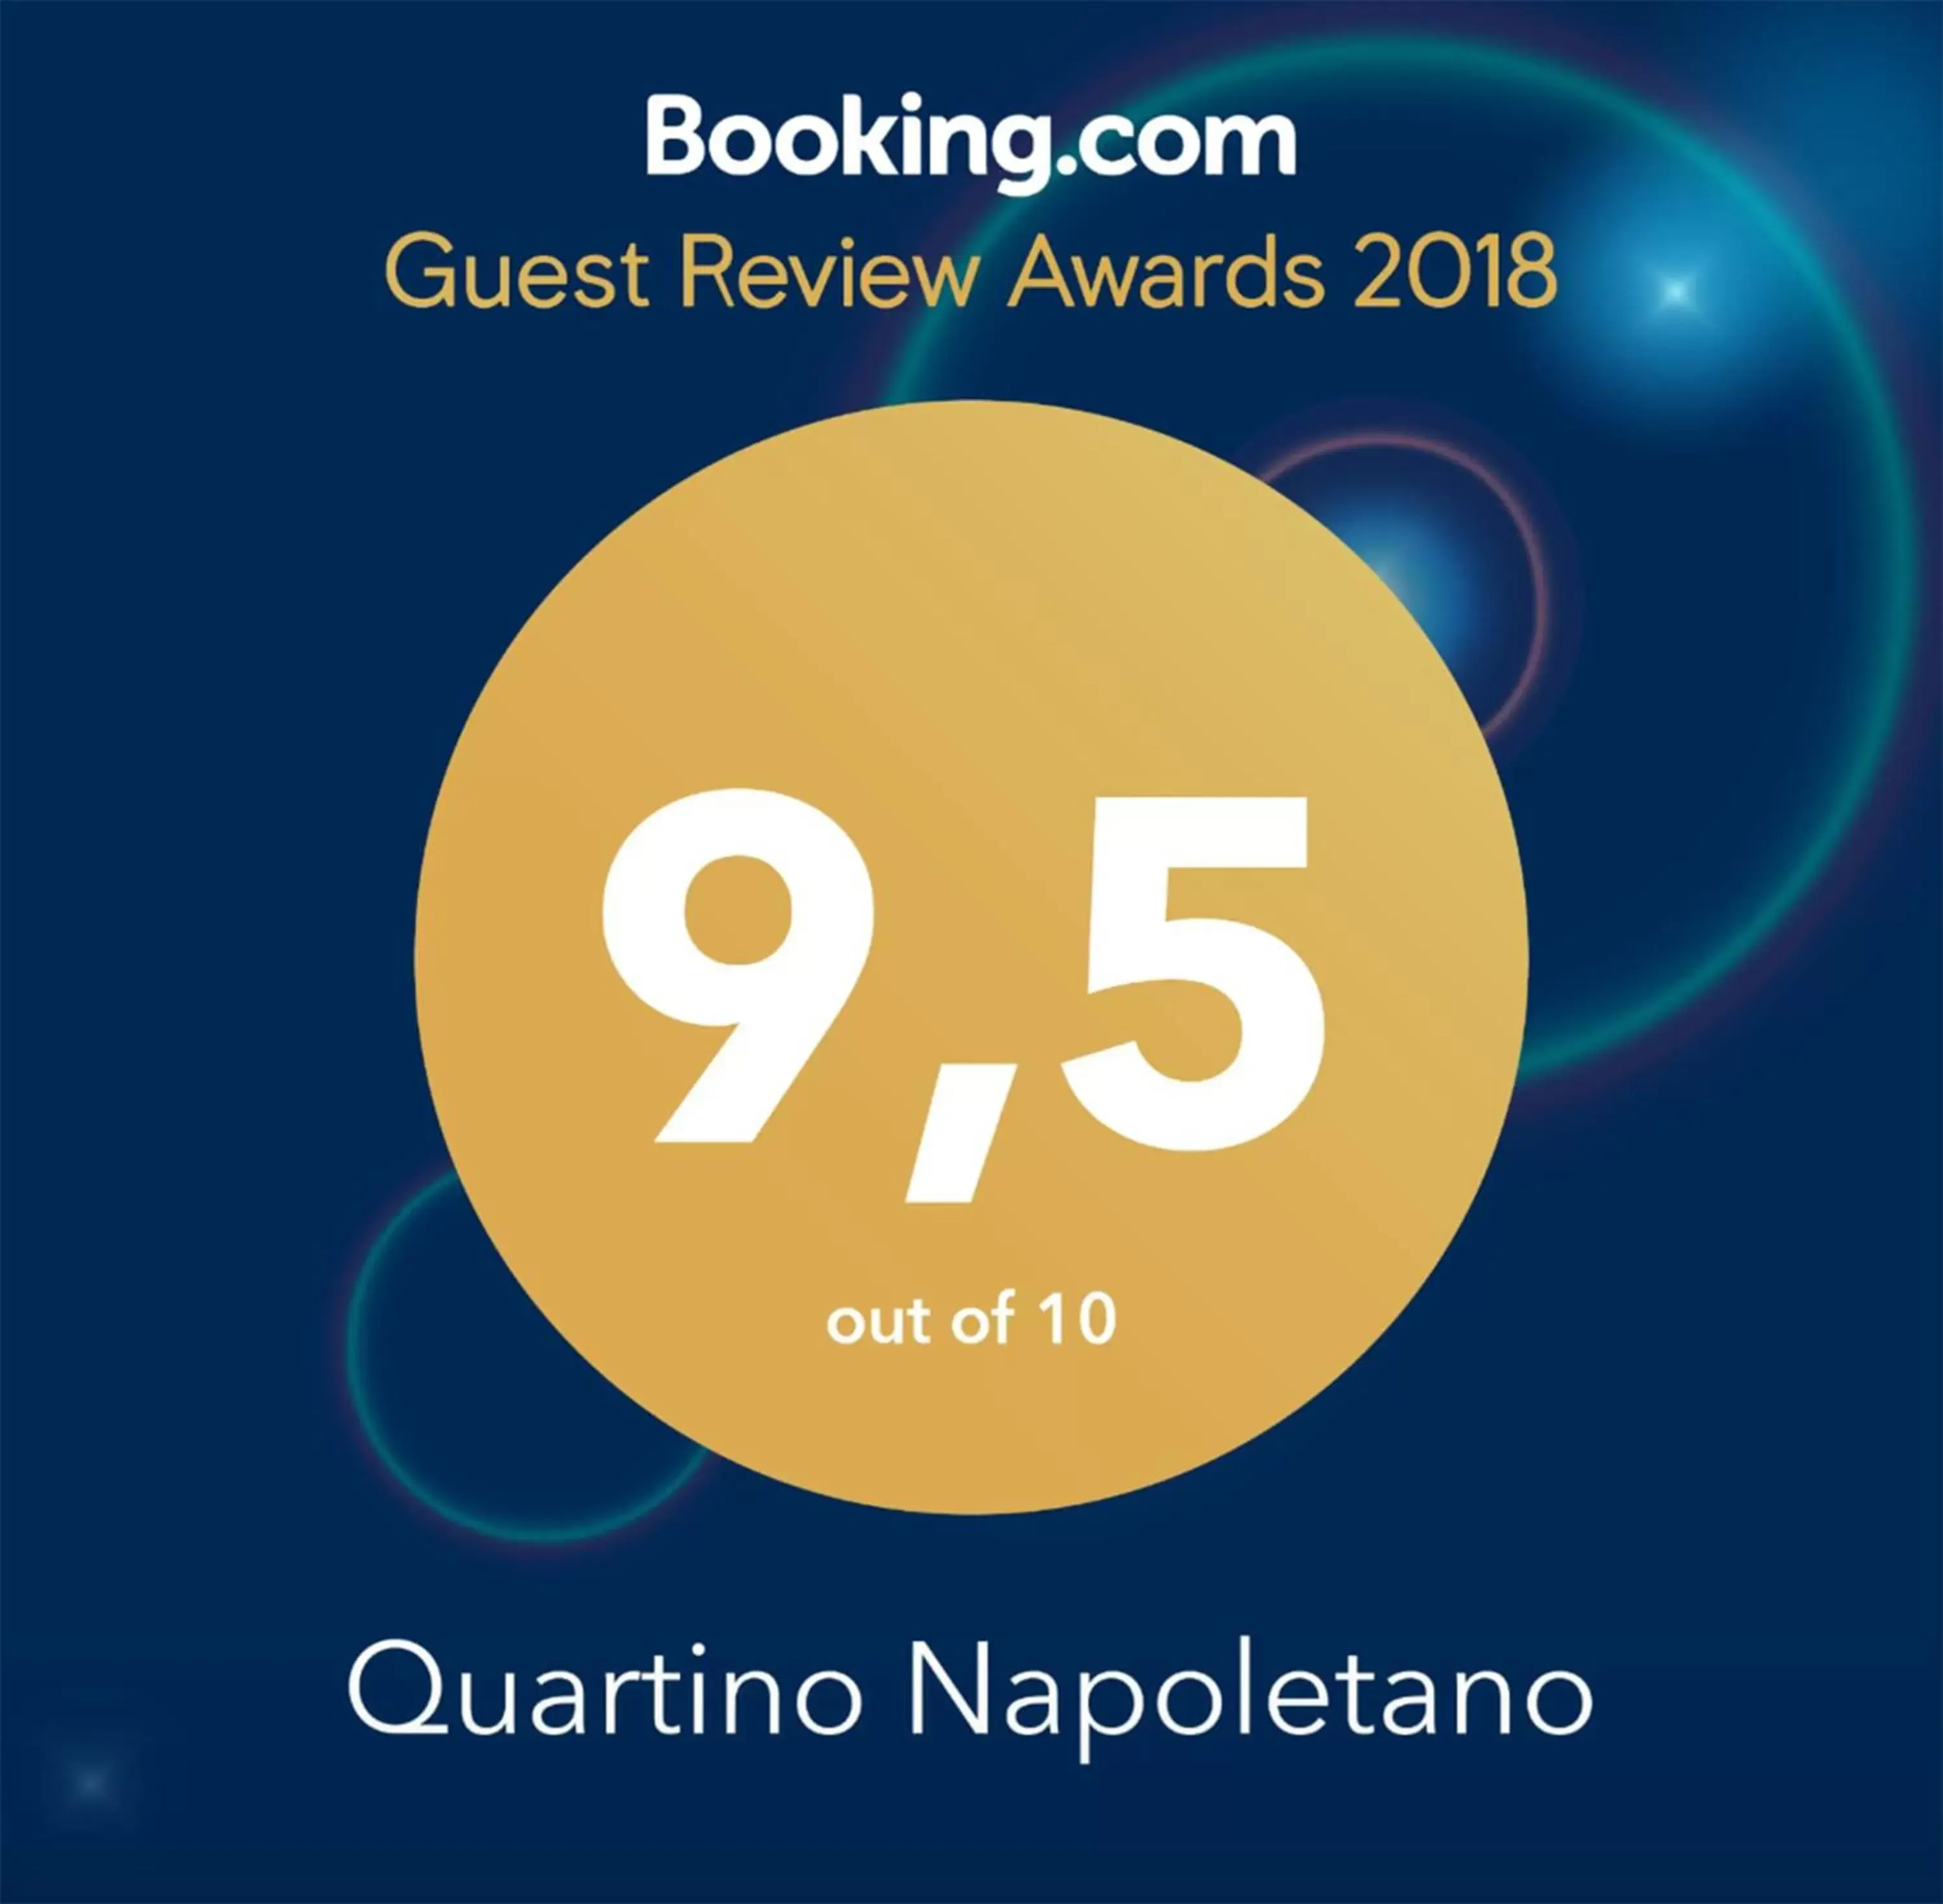 Certificate/Award in Quartino Napoletano